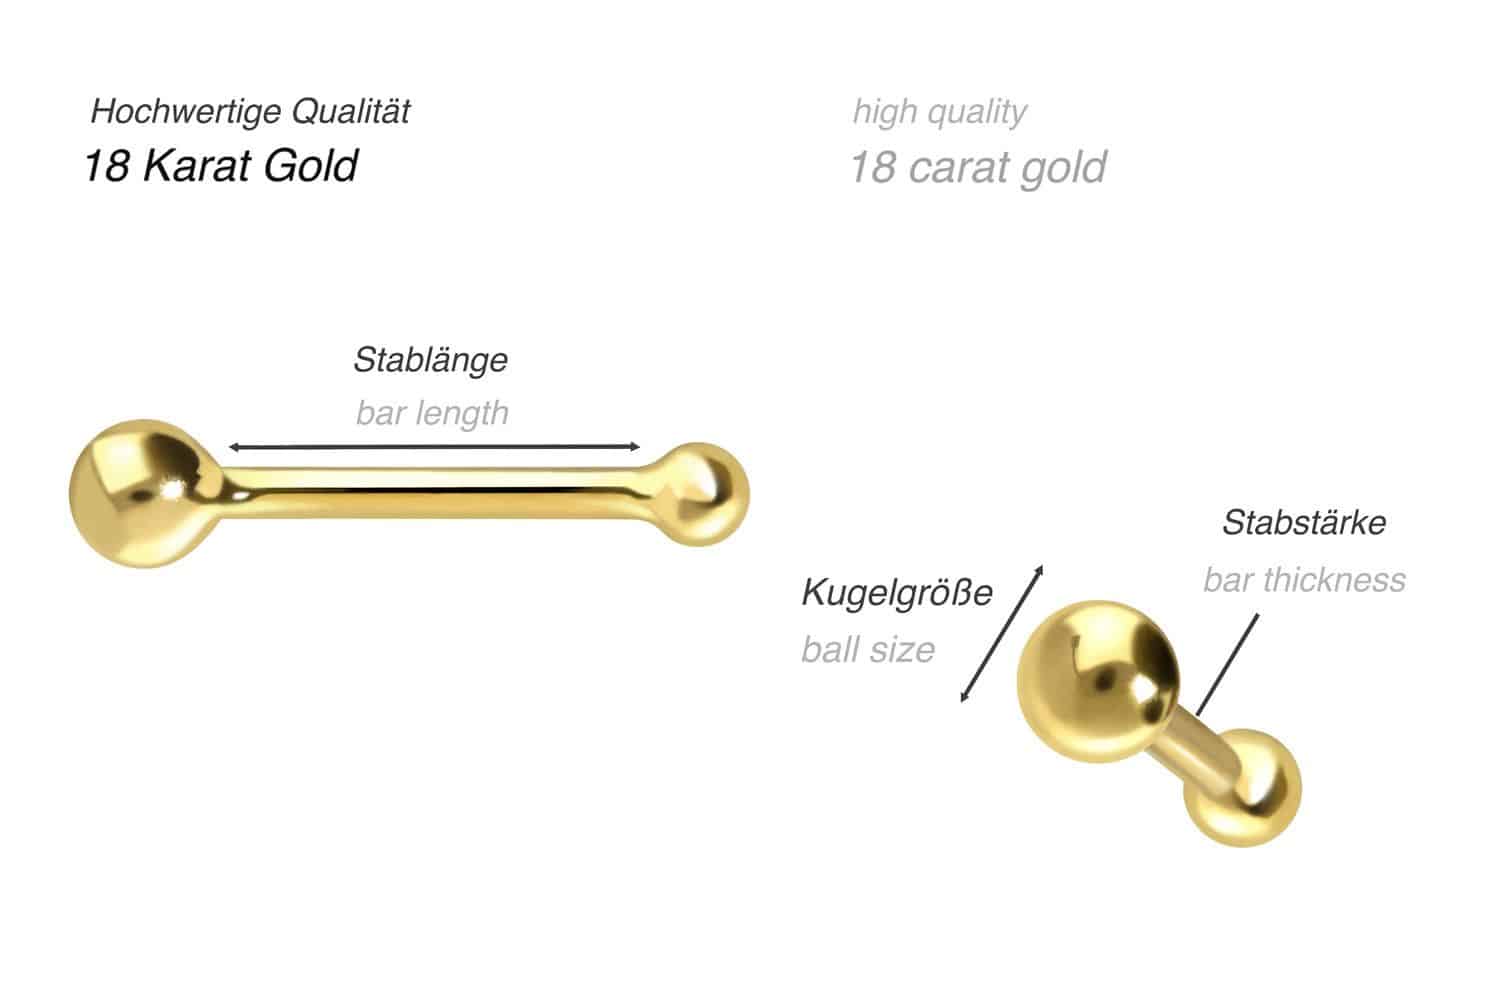 18 carat gold nose stud pin 1.5 mm BALL